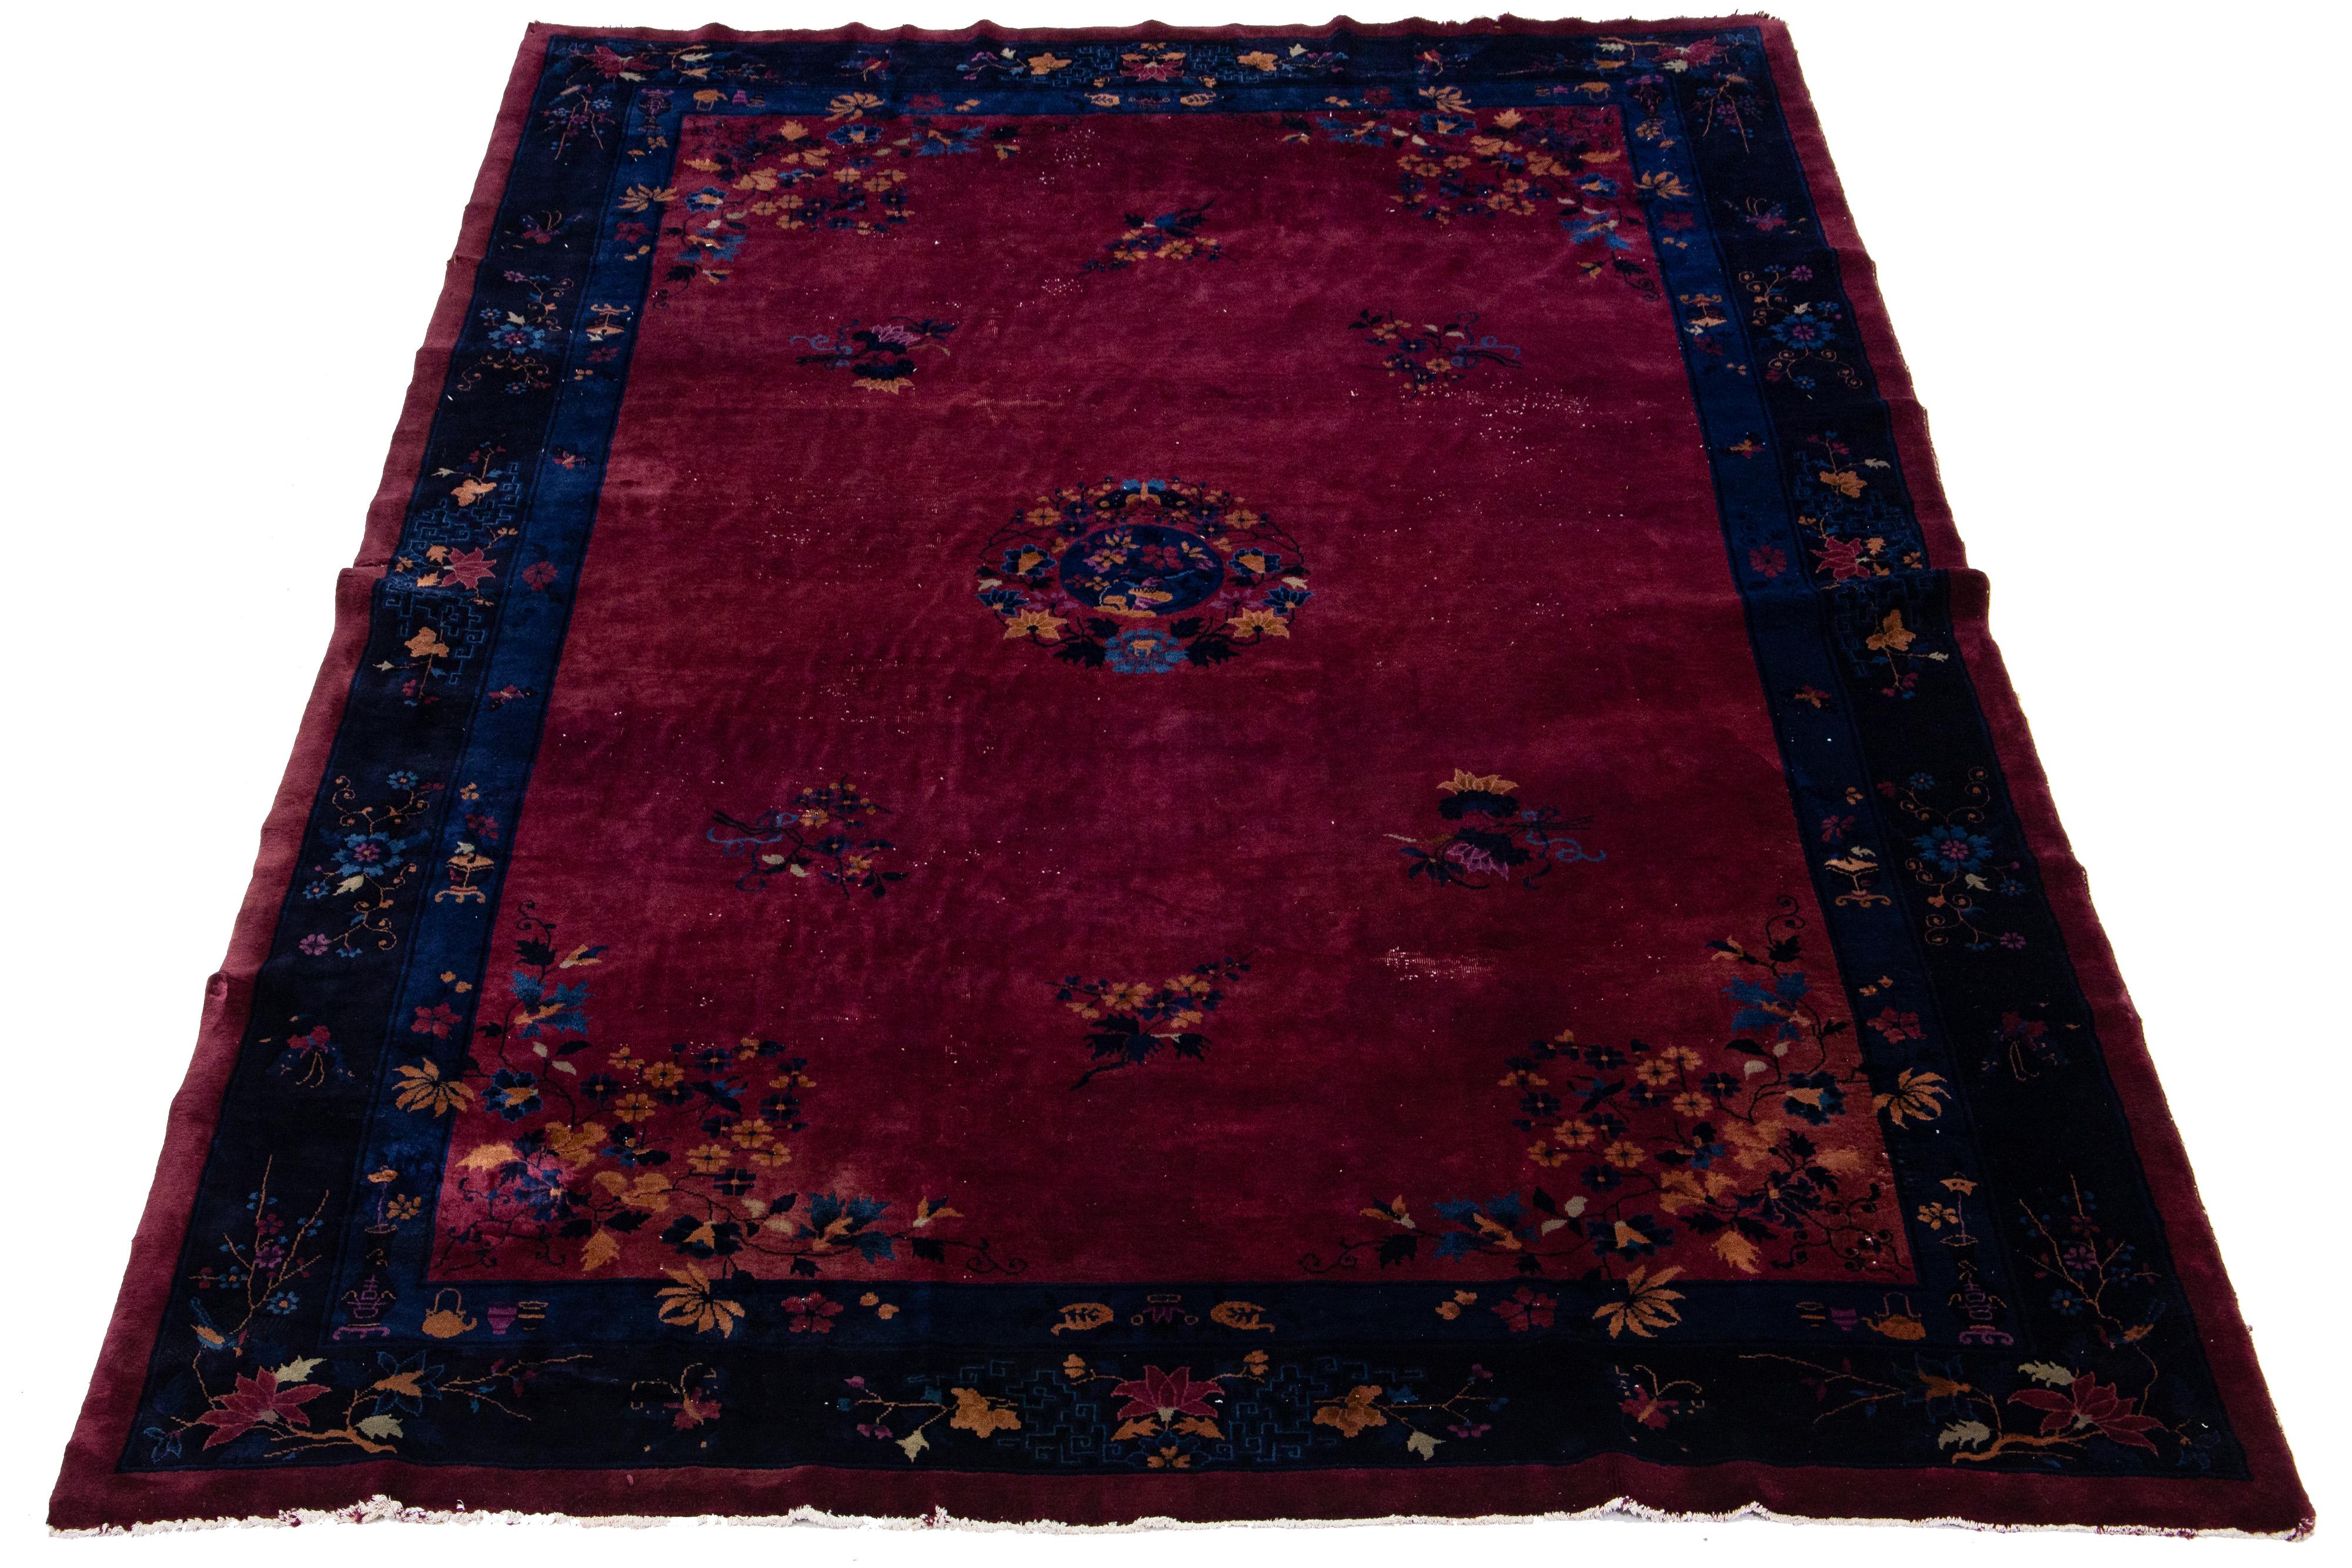 Dieser antike chinesische Art-Déco-Teppich ist aus Wolle handgeknüpft und zeigt ein burgunderrotes Feld mit einem marineblauen, mehrfarbigen Blumenmuster. Das klassische chinesische Blumenmuster ist elegant und raffiniert.

Dieser Teppich misst